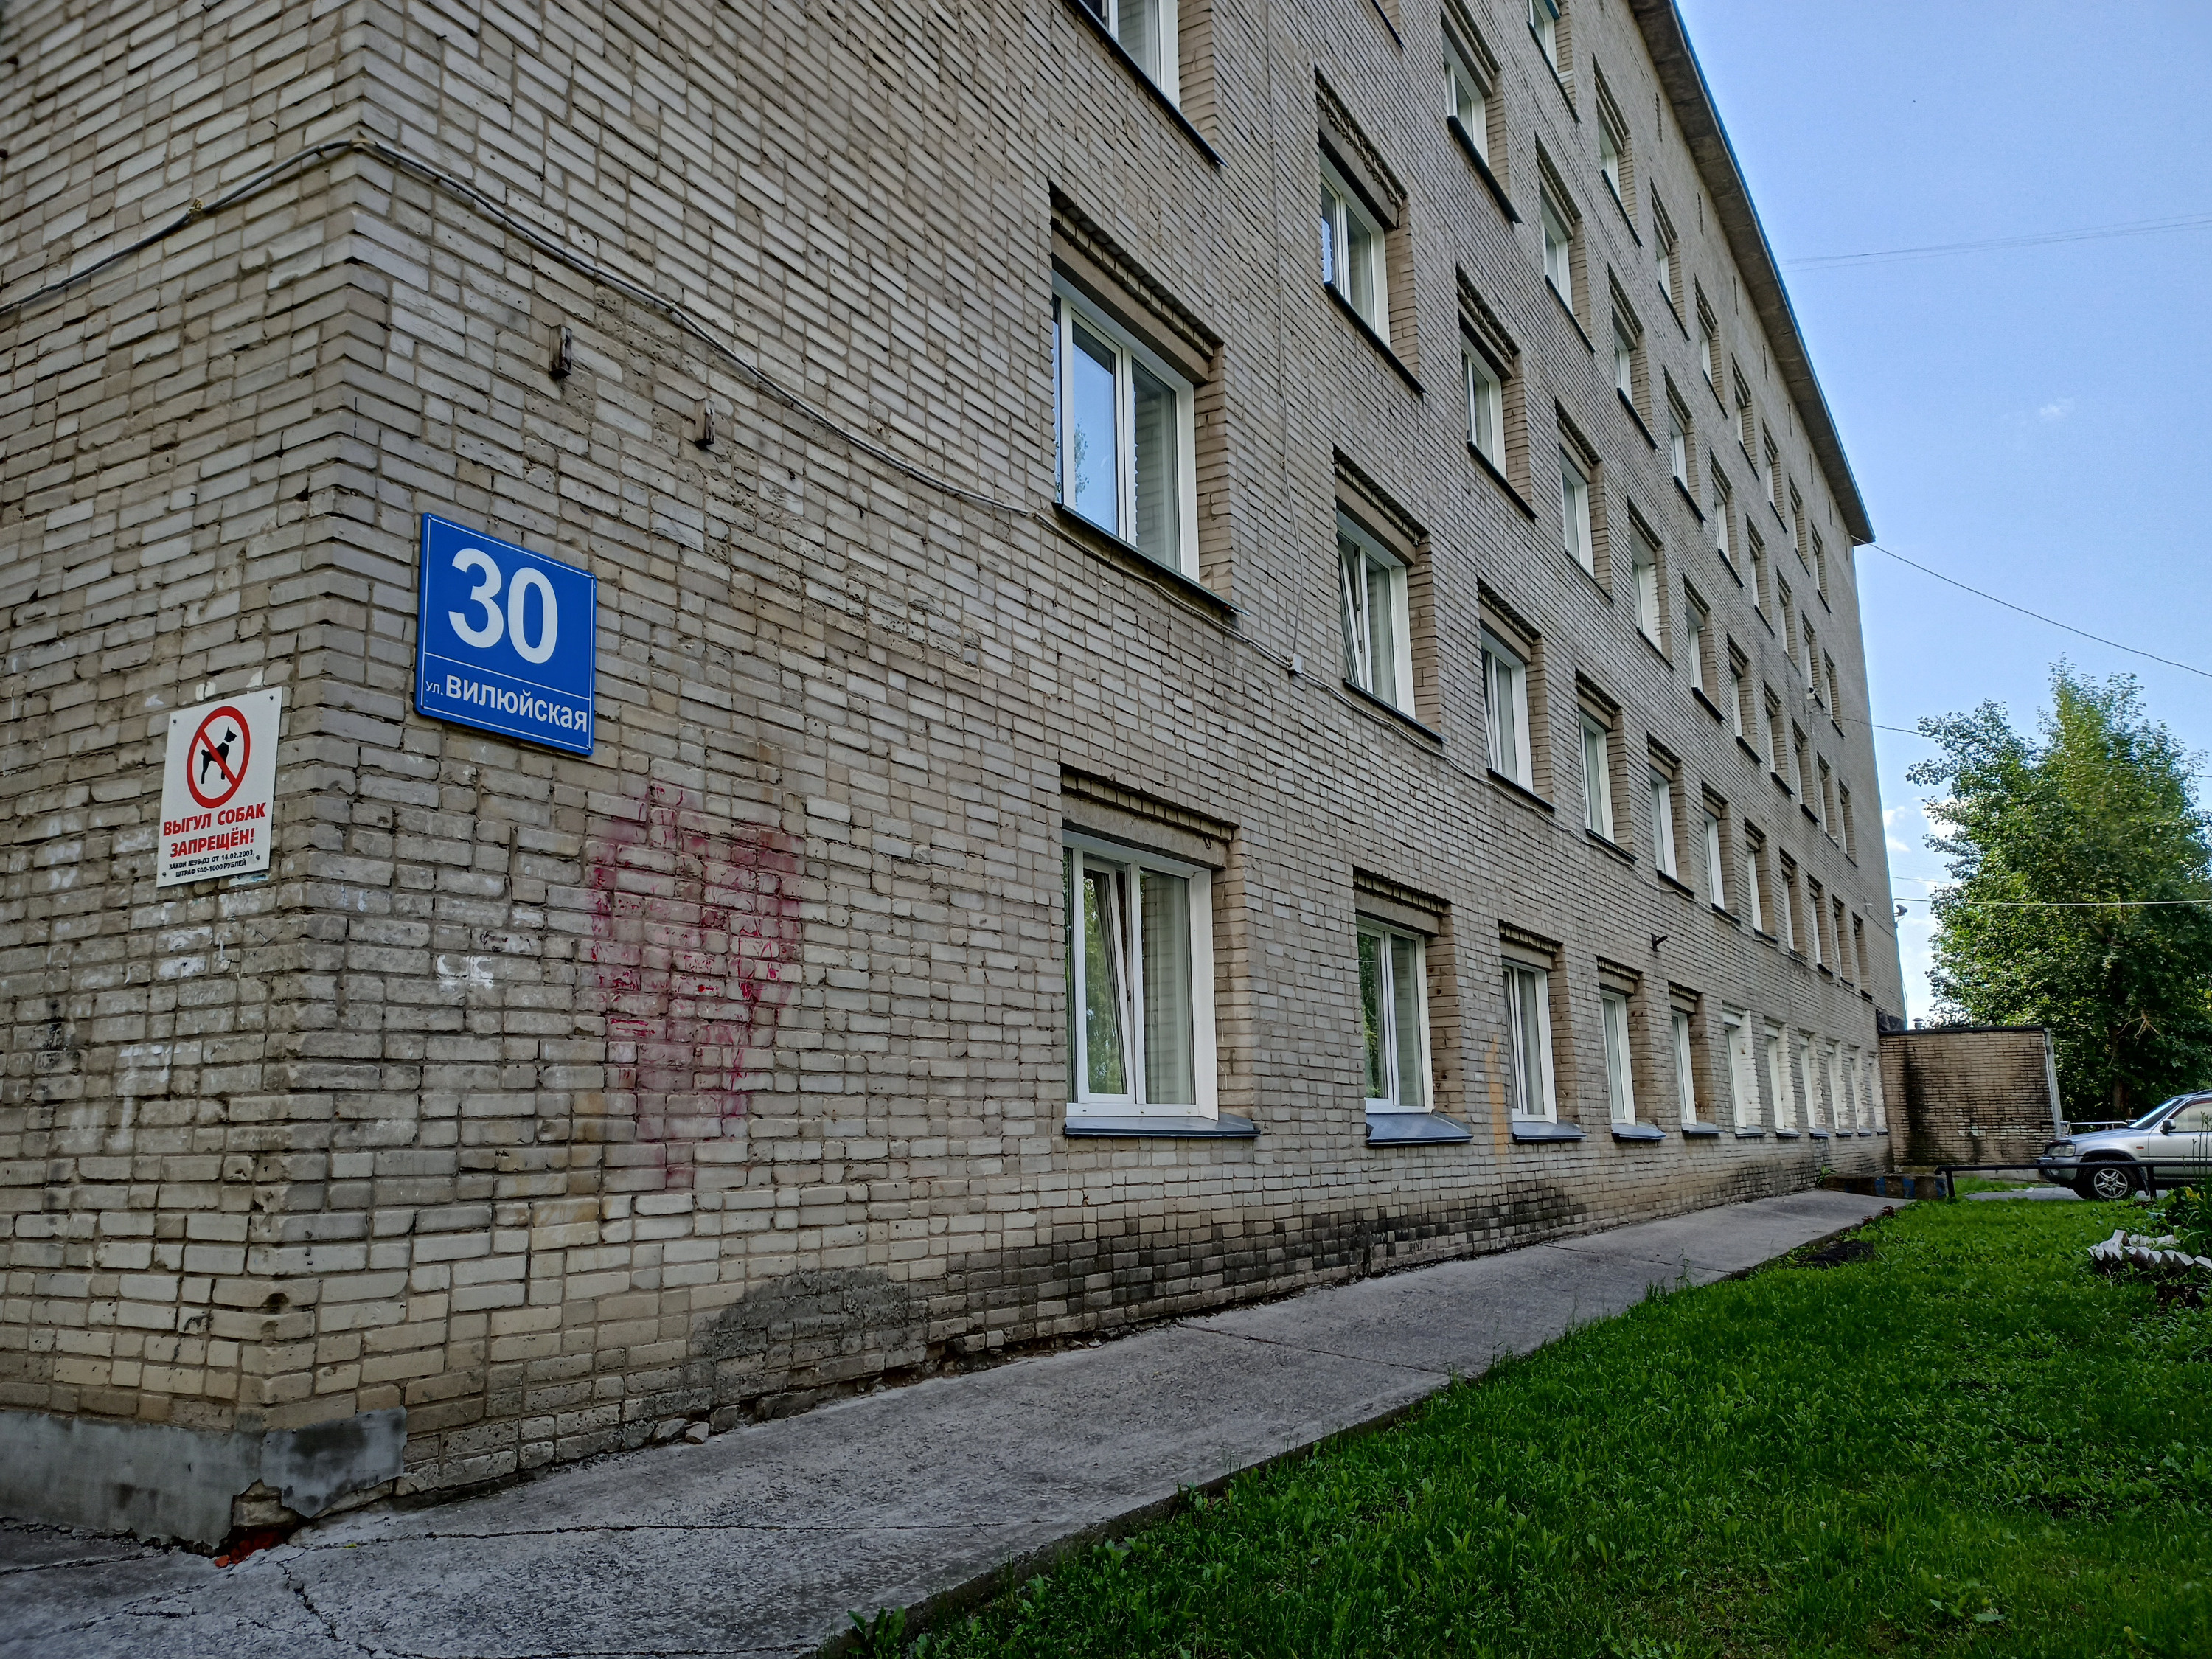 Общежитие <nobr class="_">№ 1</nobr> педагогического университета располагается на улице Вилюйской, 30.